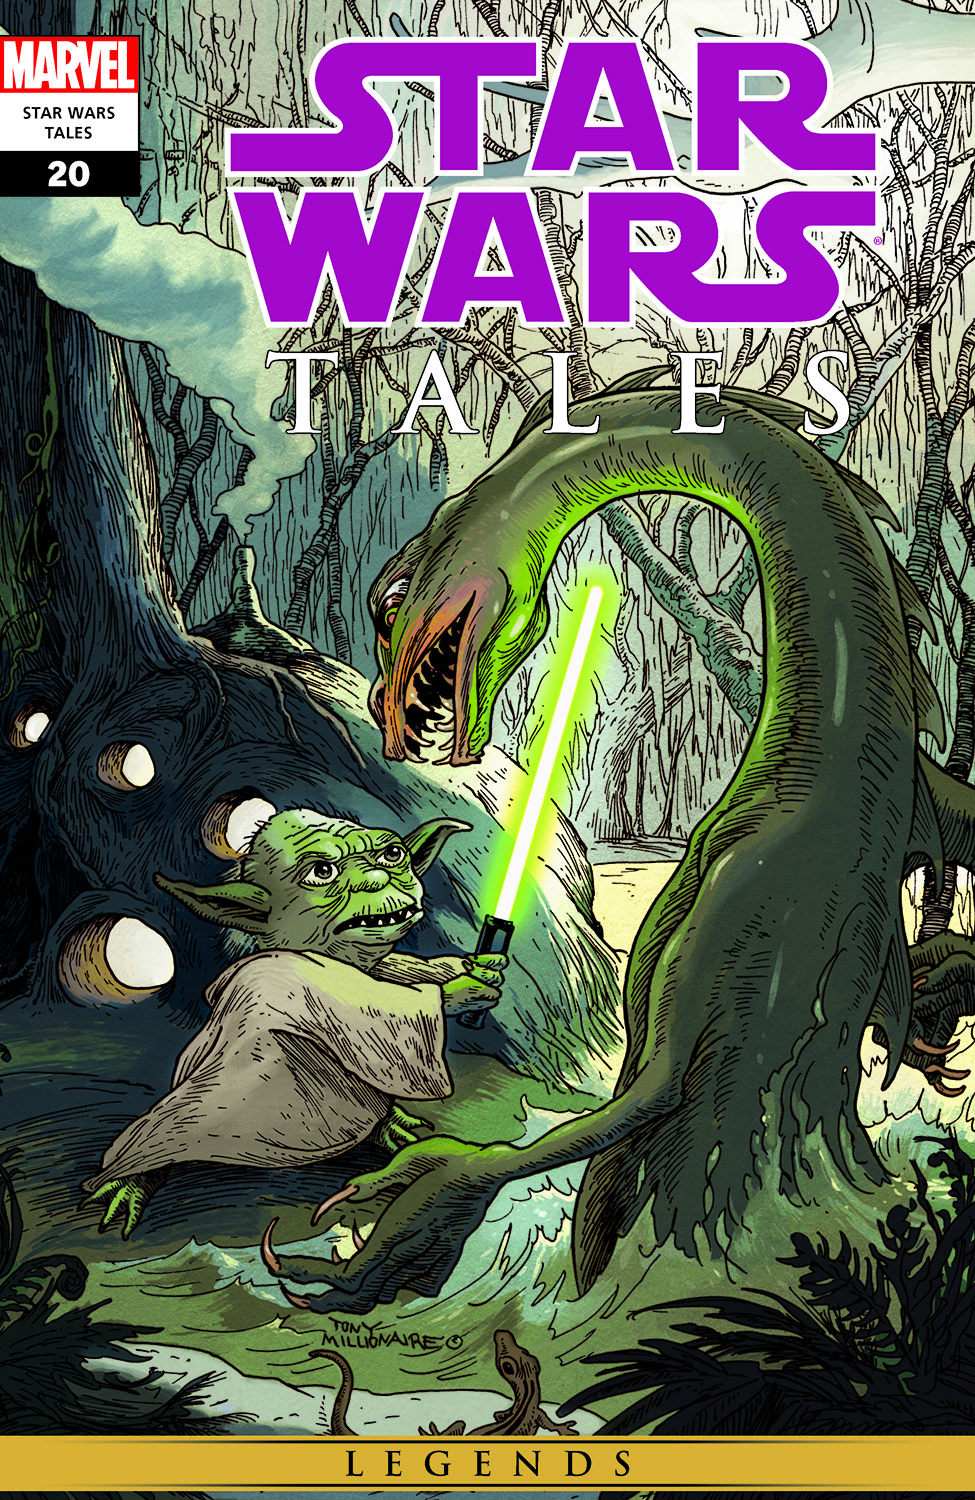 Star wars tales comics